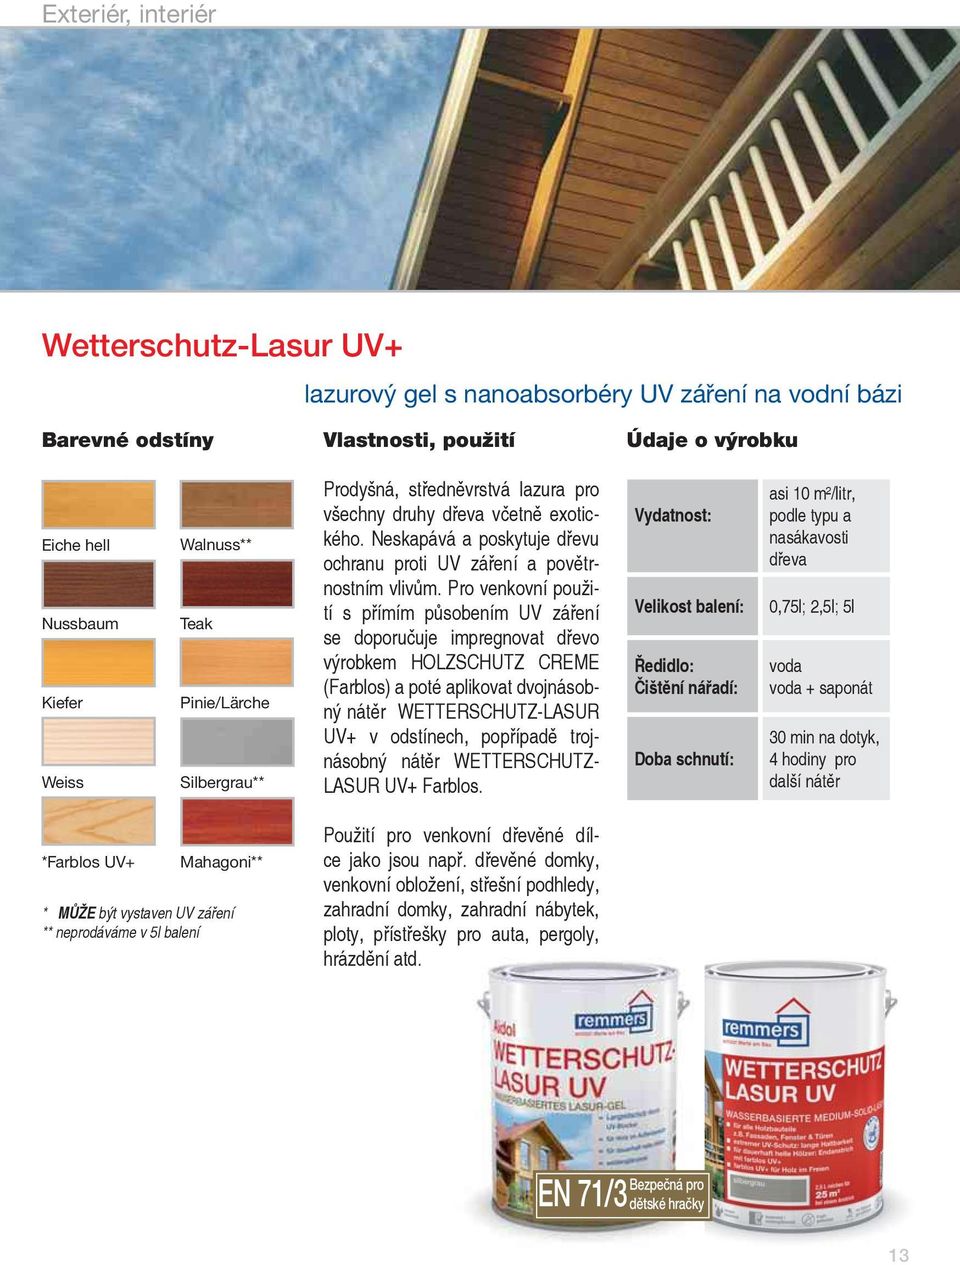 Pro venkovní použití s přímím působením UV záření se doporučuje impregnovat dřevo výrobkem HOLZSCHUTZ CREME (Farblos) a poté aplikovat dvojnásobný nátěr WETTERSCHUTZ-LASUR UV+ v odstínech, popřípadě